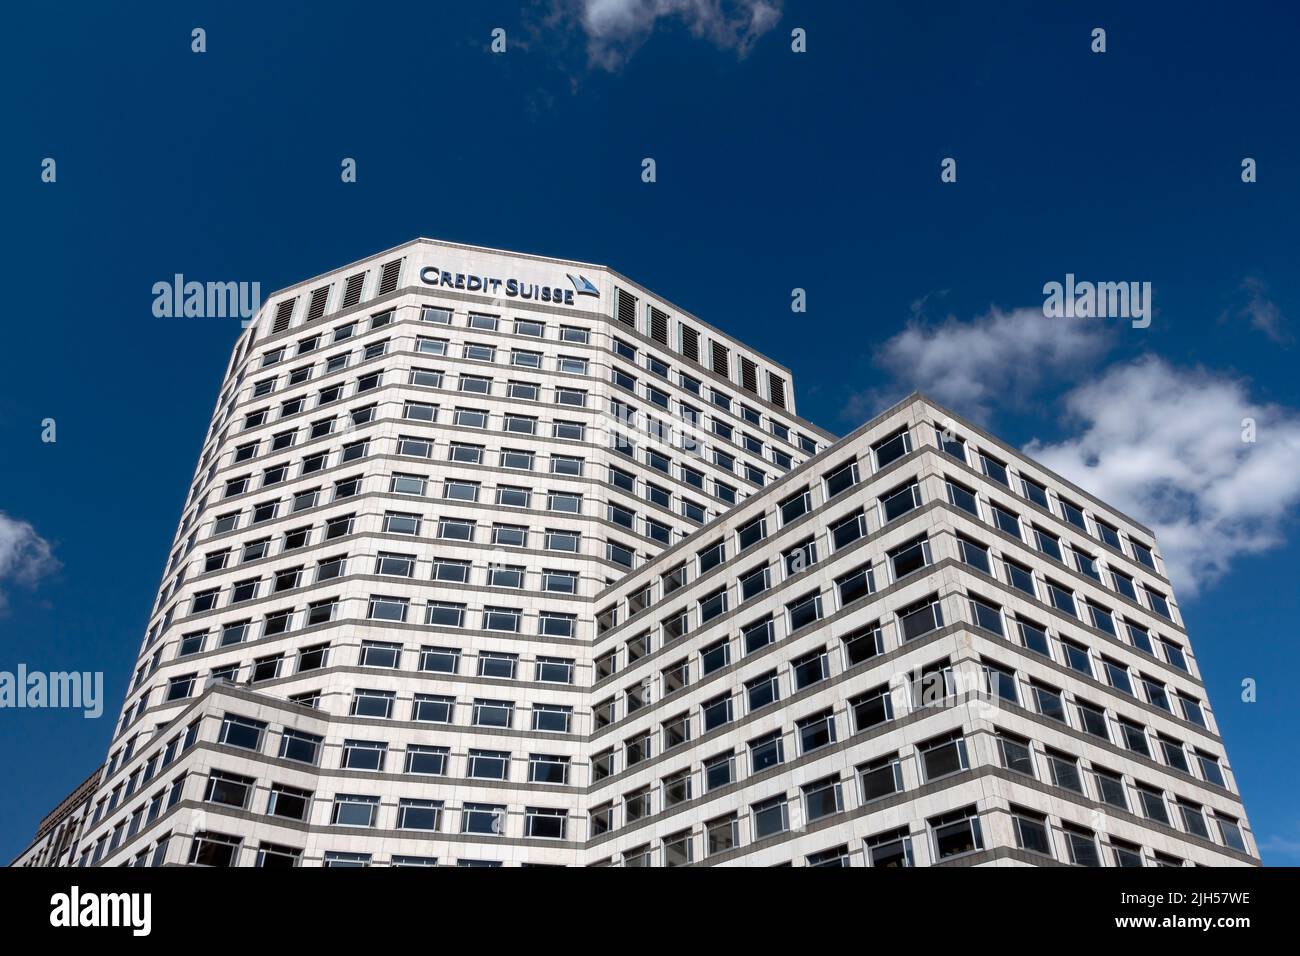 Bureaux de Credit Suisse Bank, Canary Wharf, centre financier. Quartier central des affaires. Docklands. Londres, Angleterre. Copier l'espace. Banque D'Images